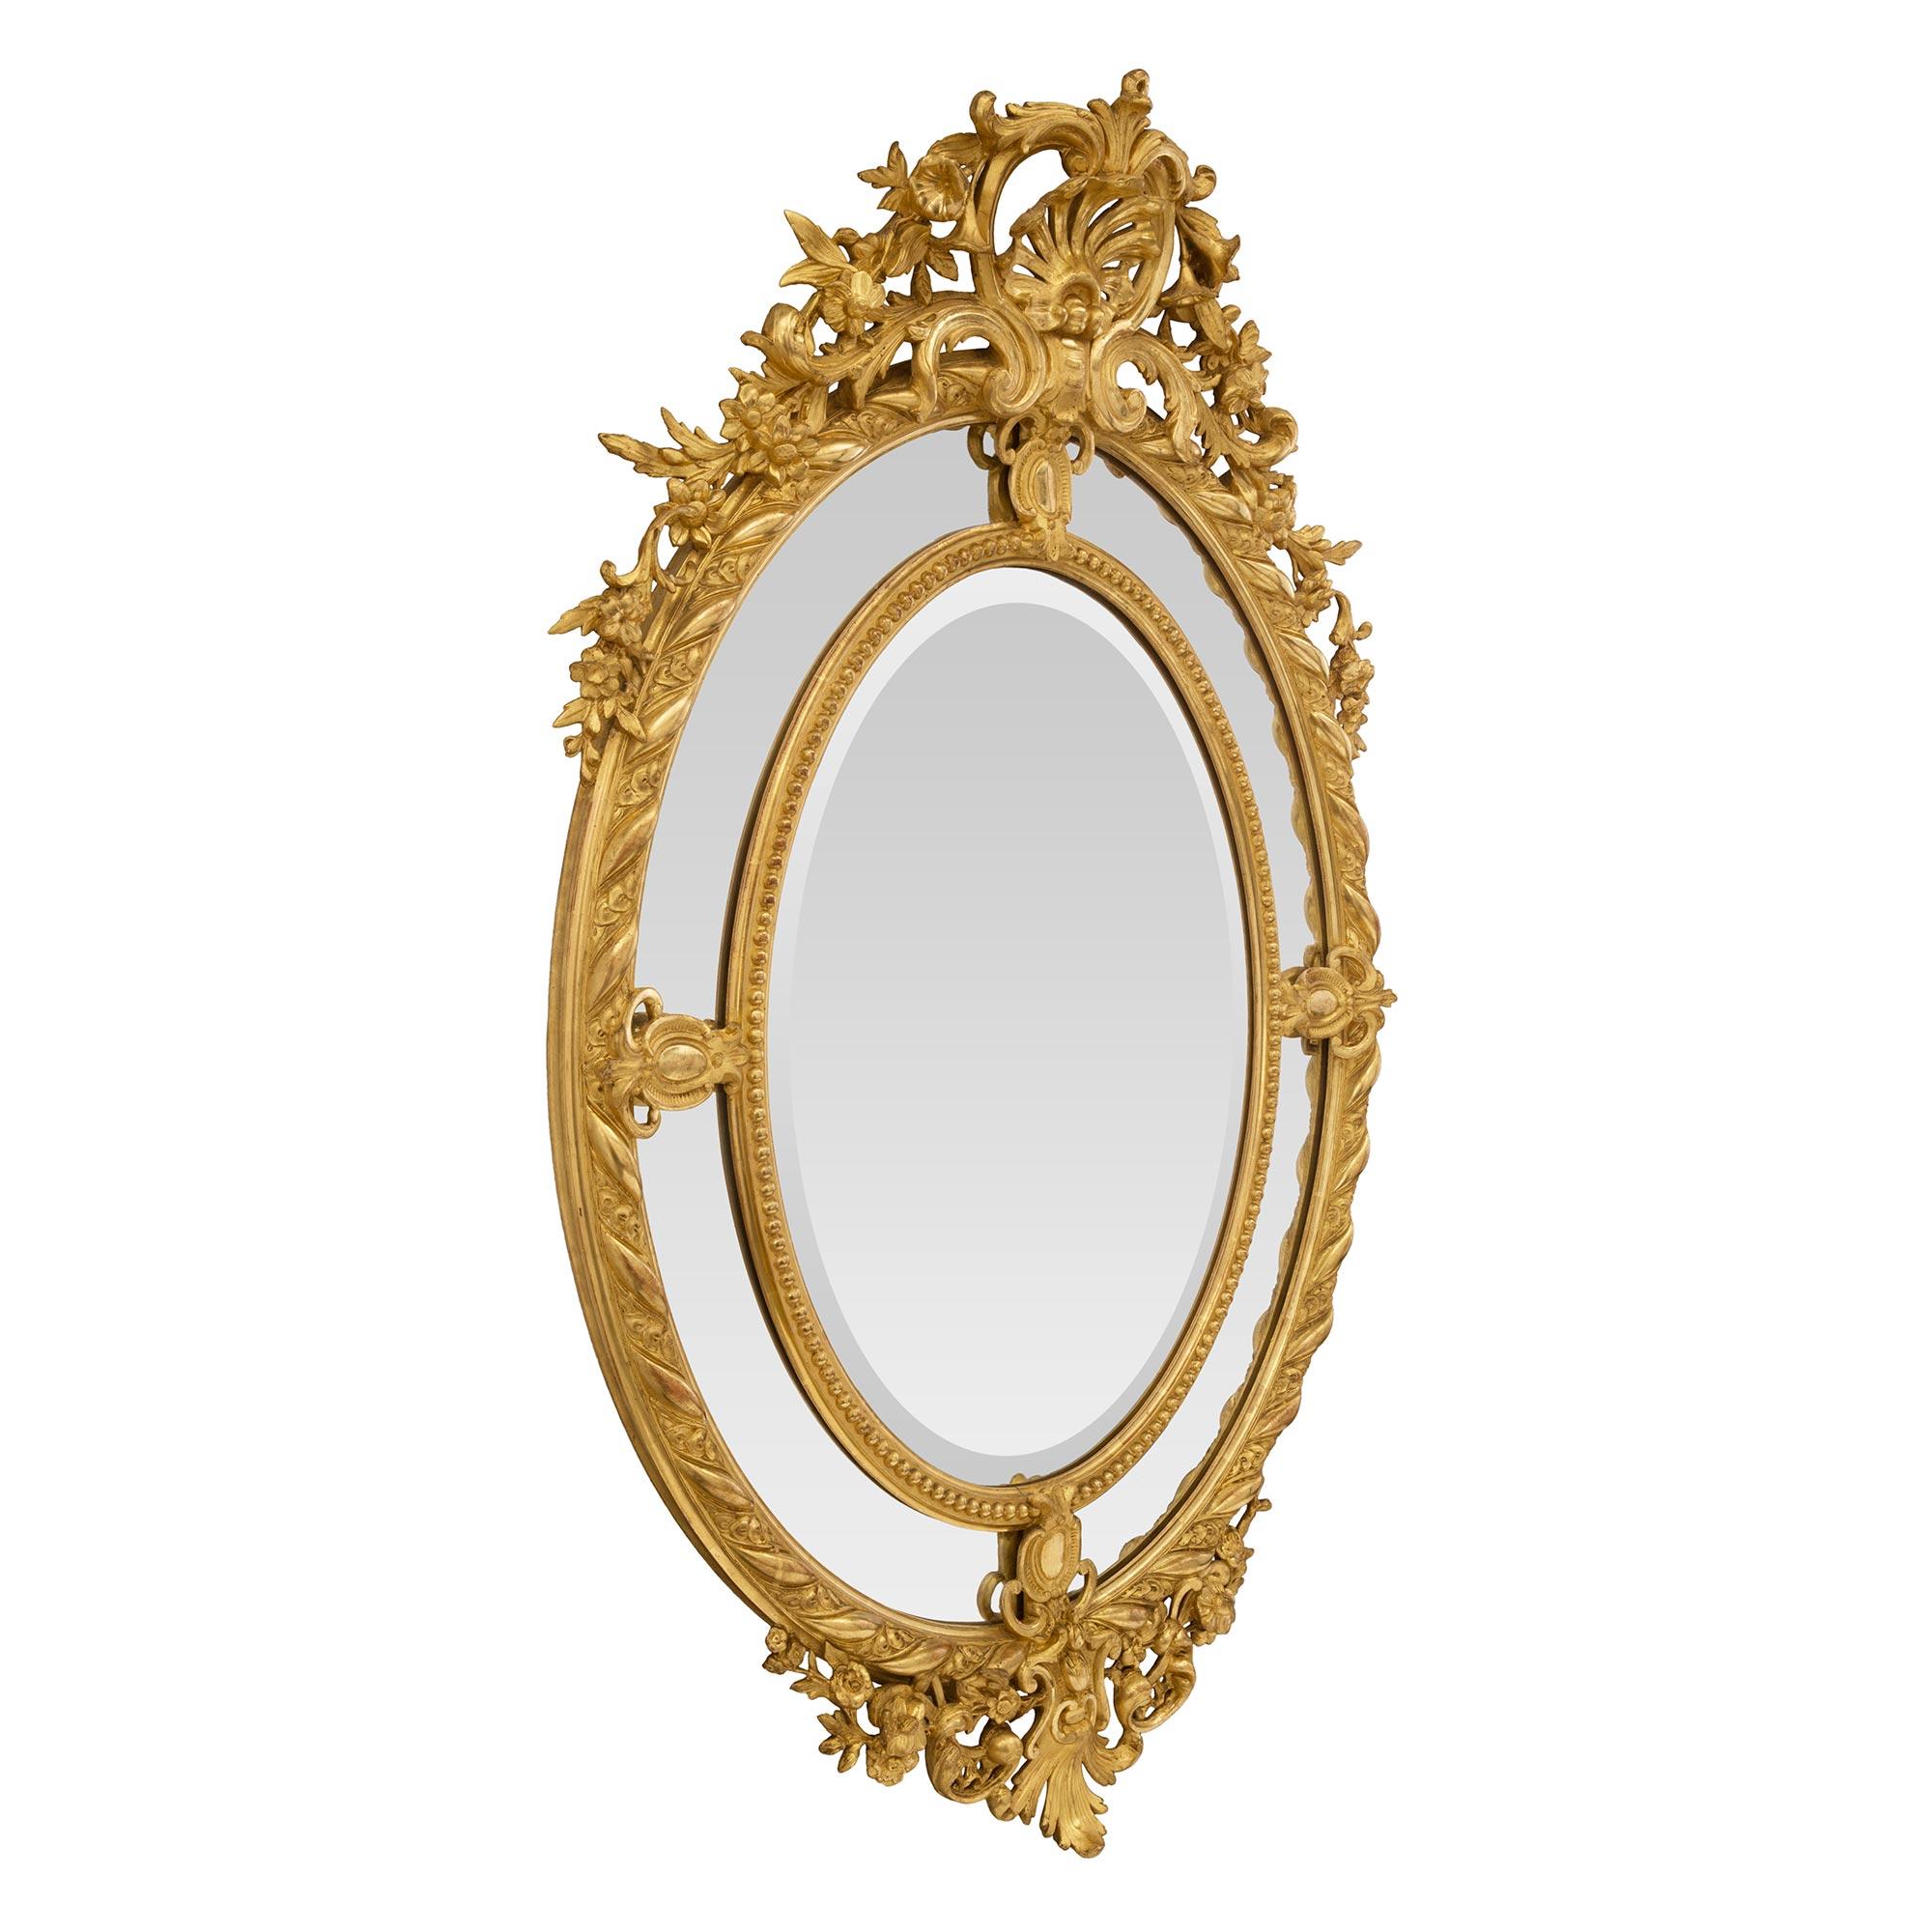 Superbe miroir ovale en bois doré à double cadre, de style Louis XV, datant du XIXe siècle. Le miroir central biseauté d'origine est encadré d'une fine bande perlée. Les quatre plaques de miroir extérieures originales sont séparées par de jolis